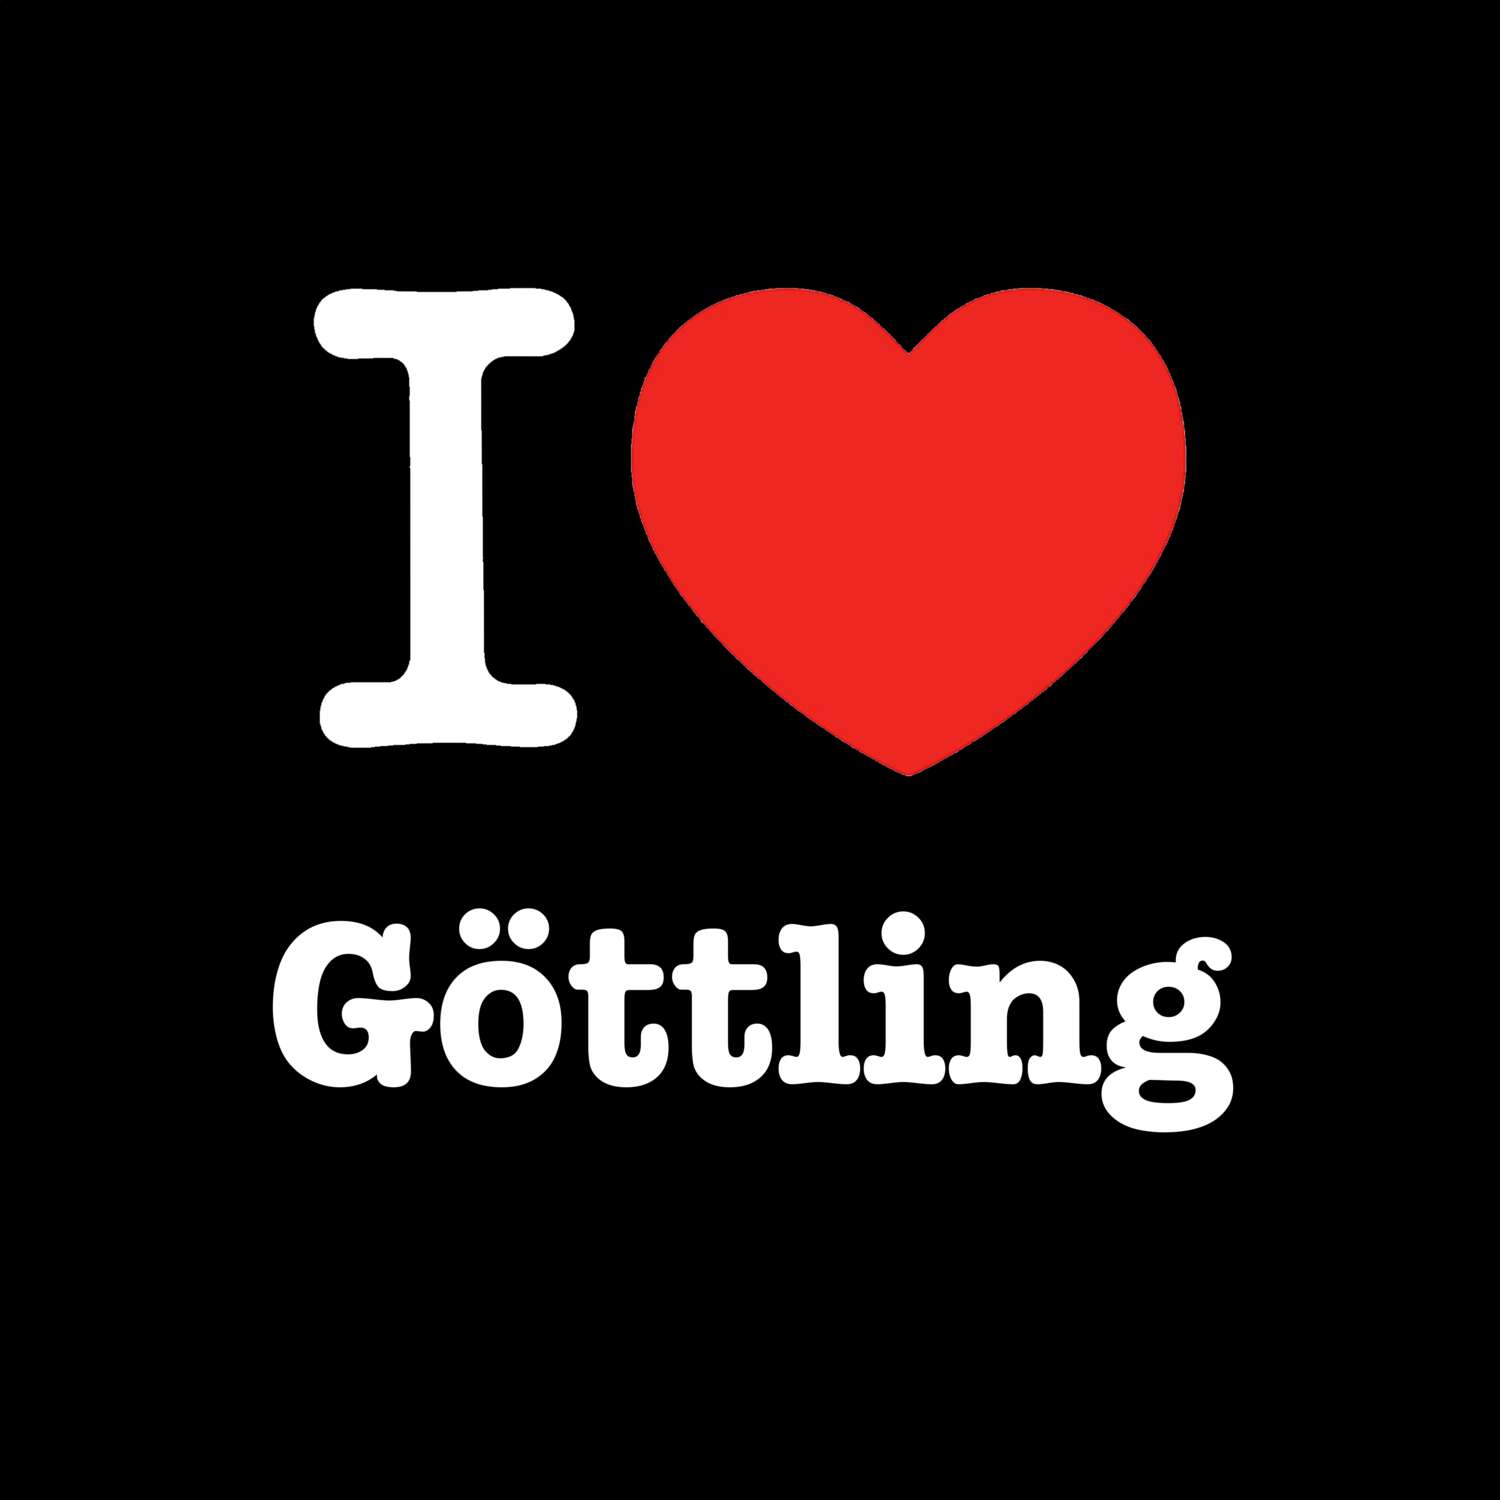 Göttling T-Shirt »I love«